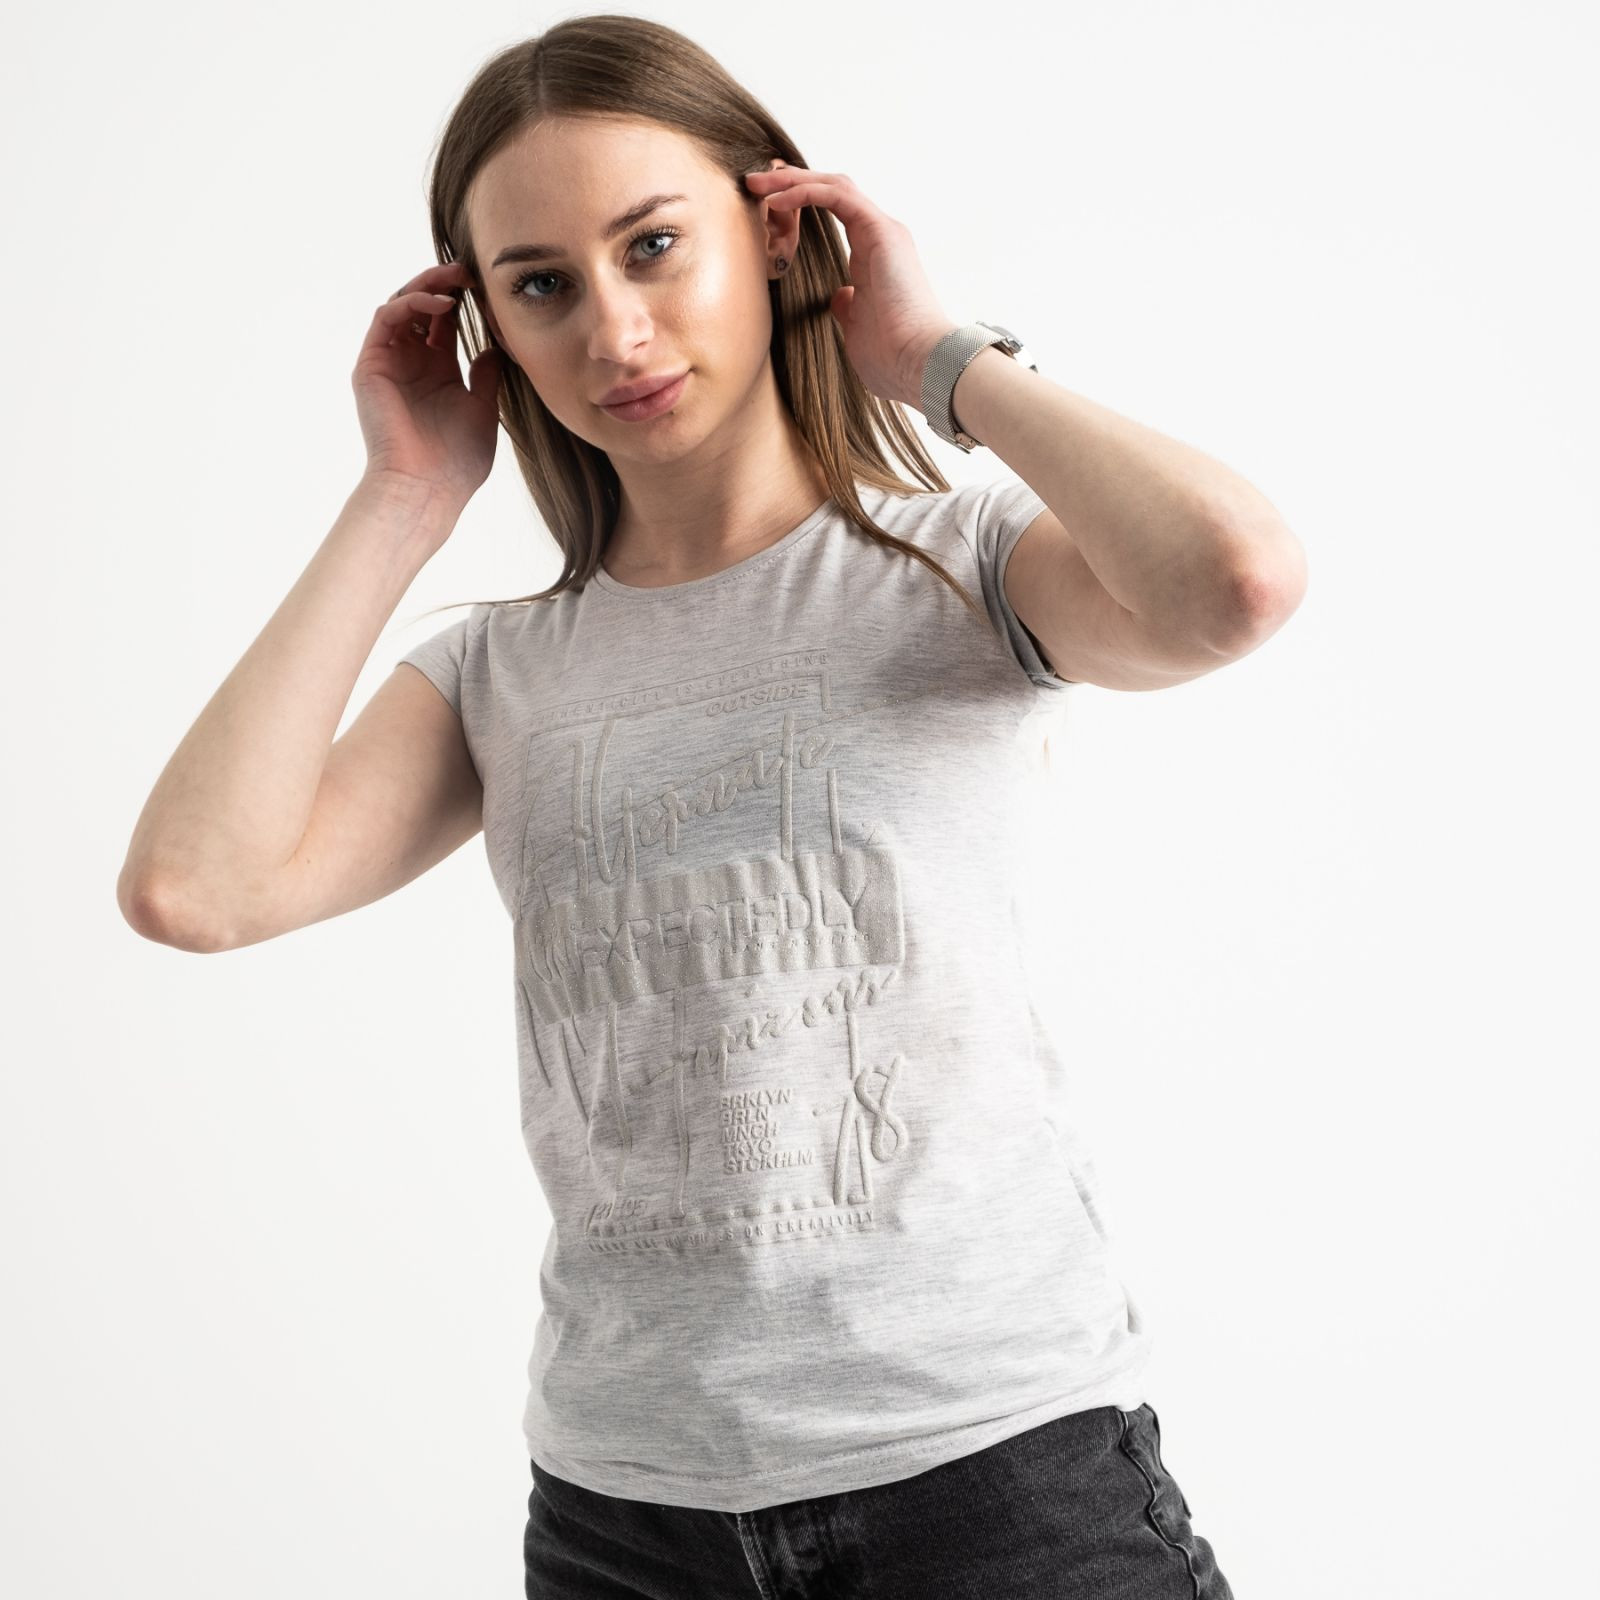 2590-5 Geso серая футболка женская с принтом (4 ед. размеры: S.M.L.XL)